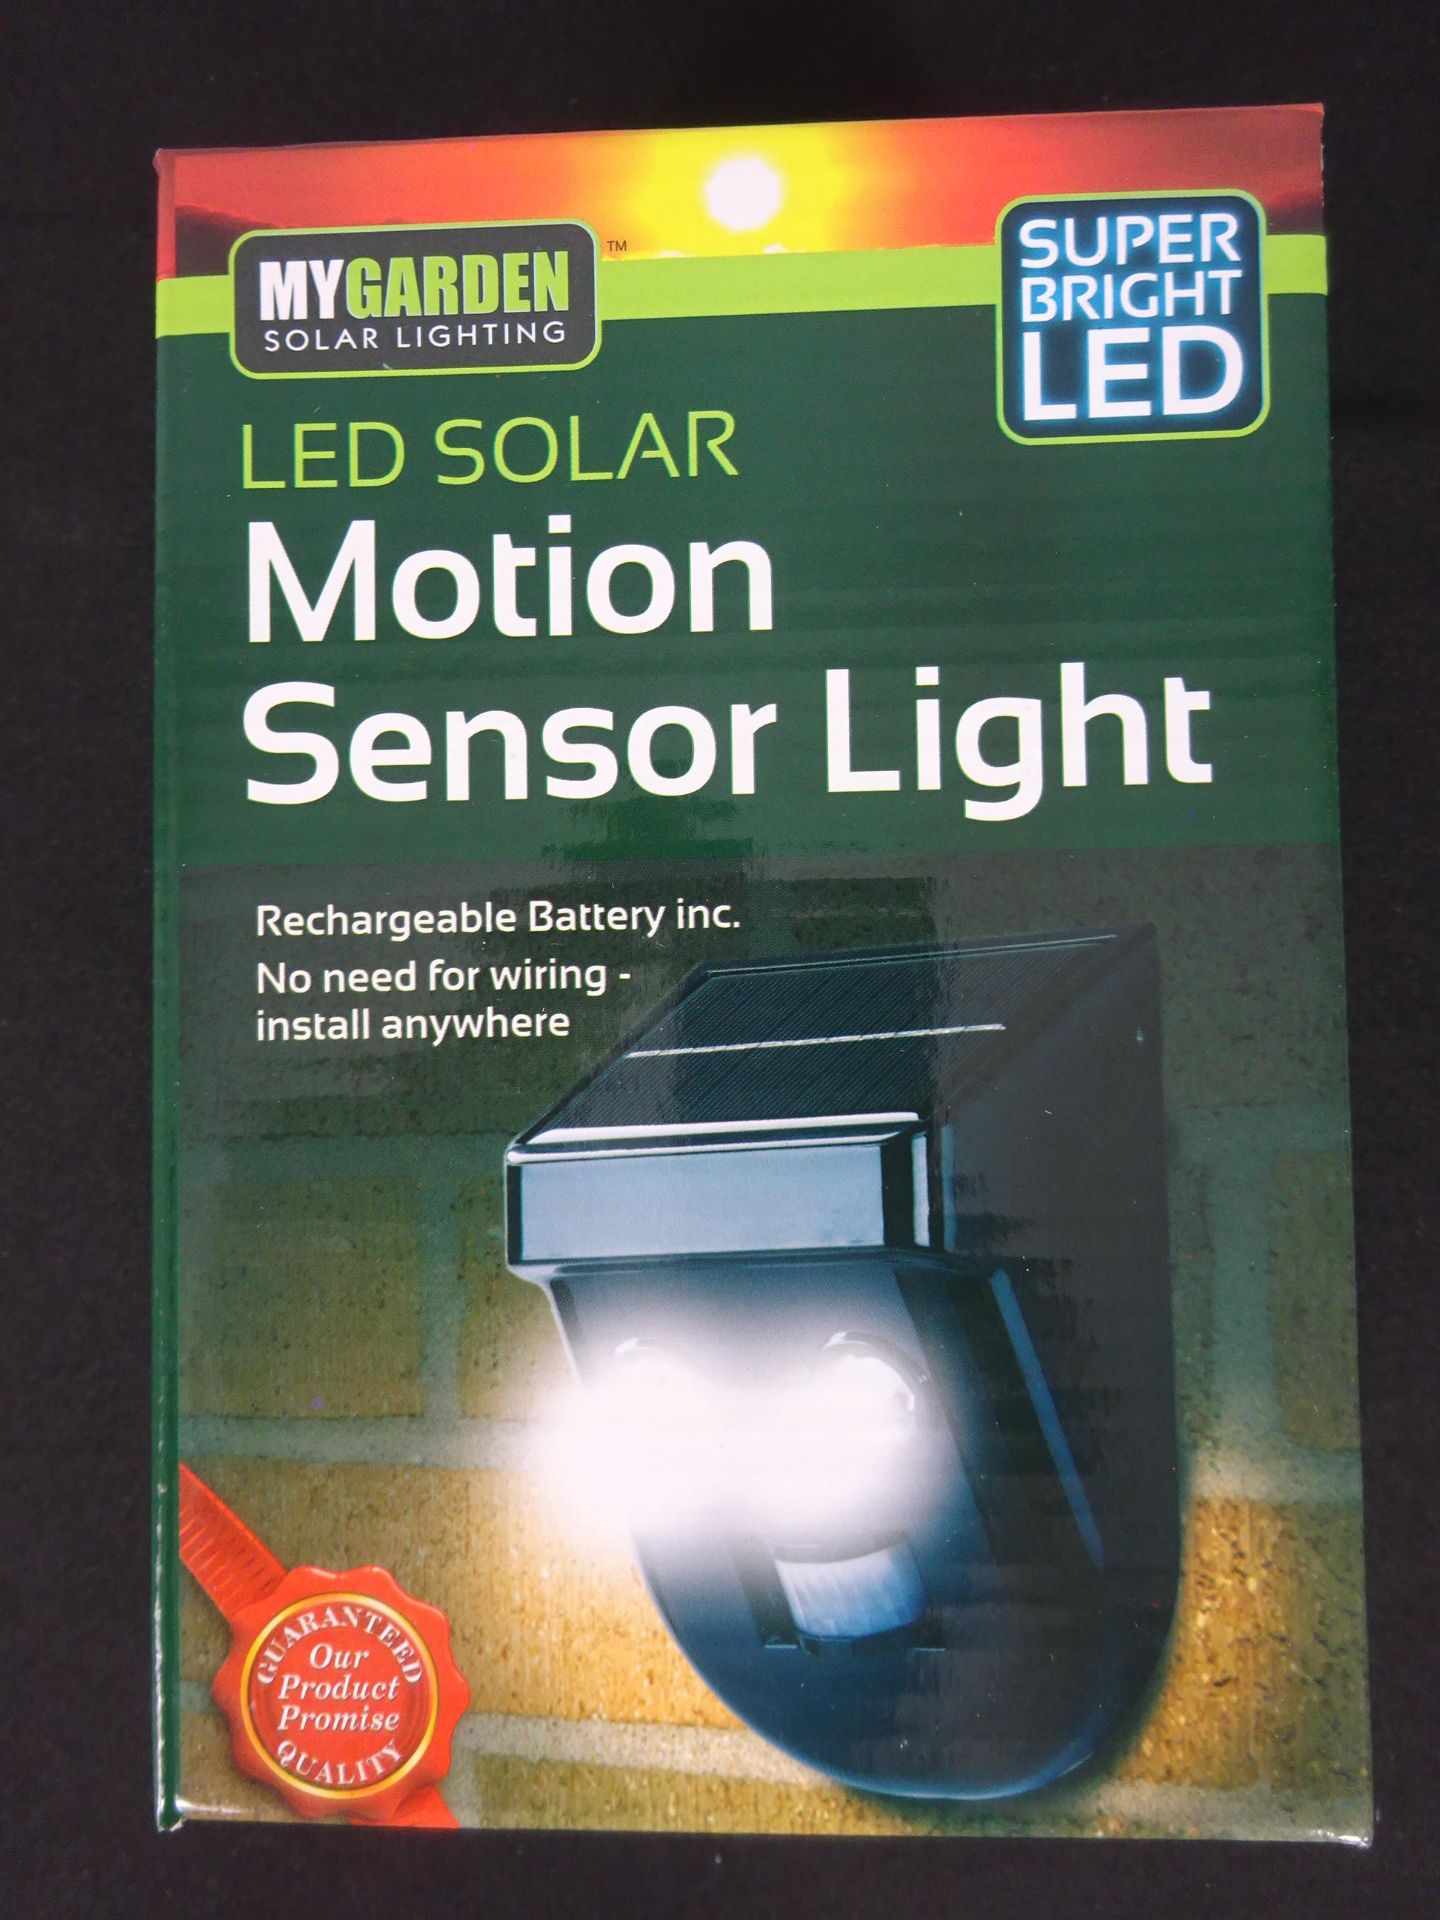 New LED Solar Motion Sensor Light